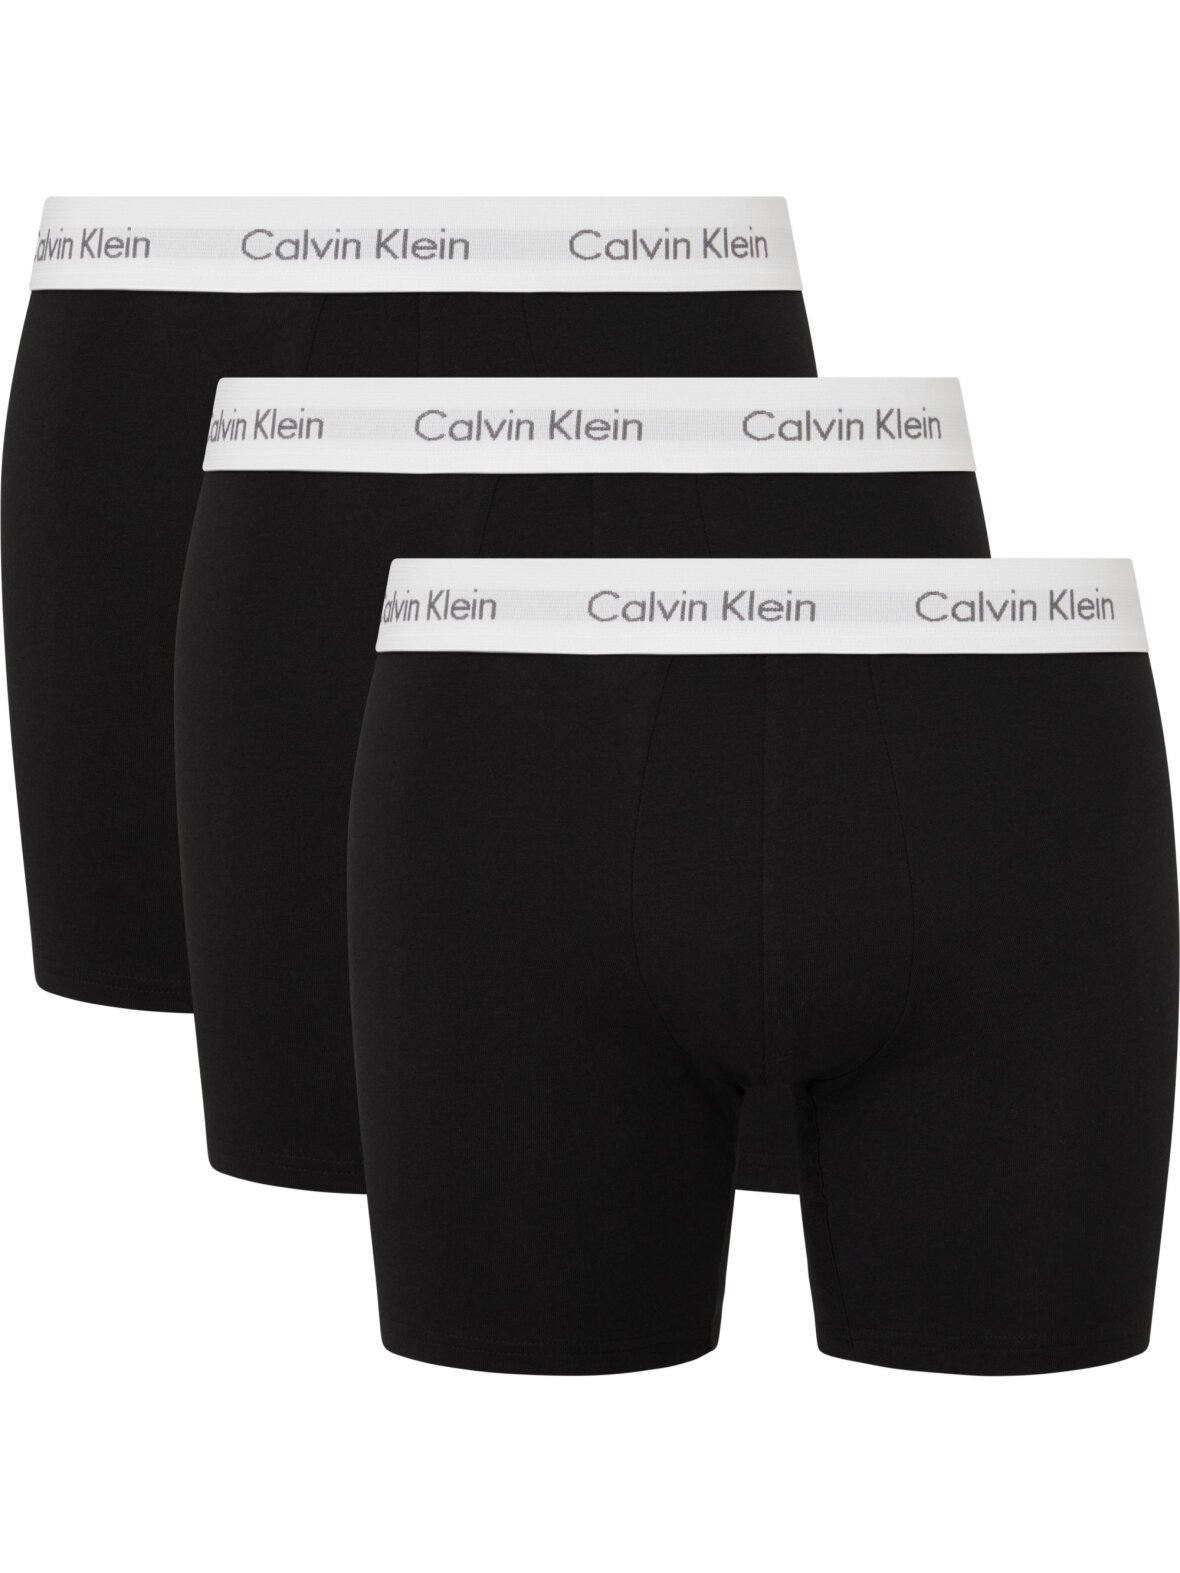 CC Christensen - Undertøj - Calvin Klein Underwear Calvin Klein boxer brief